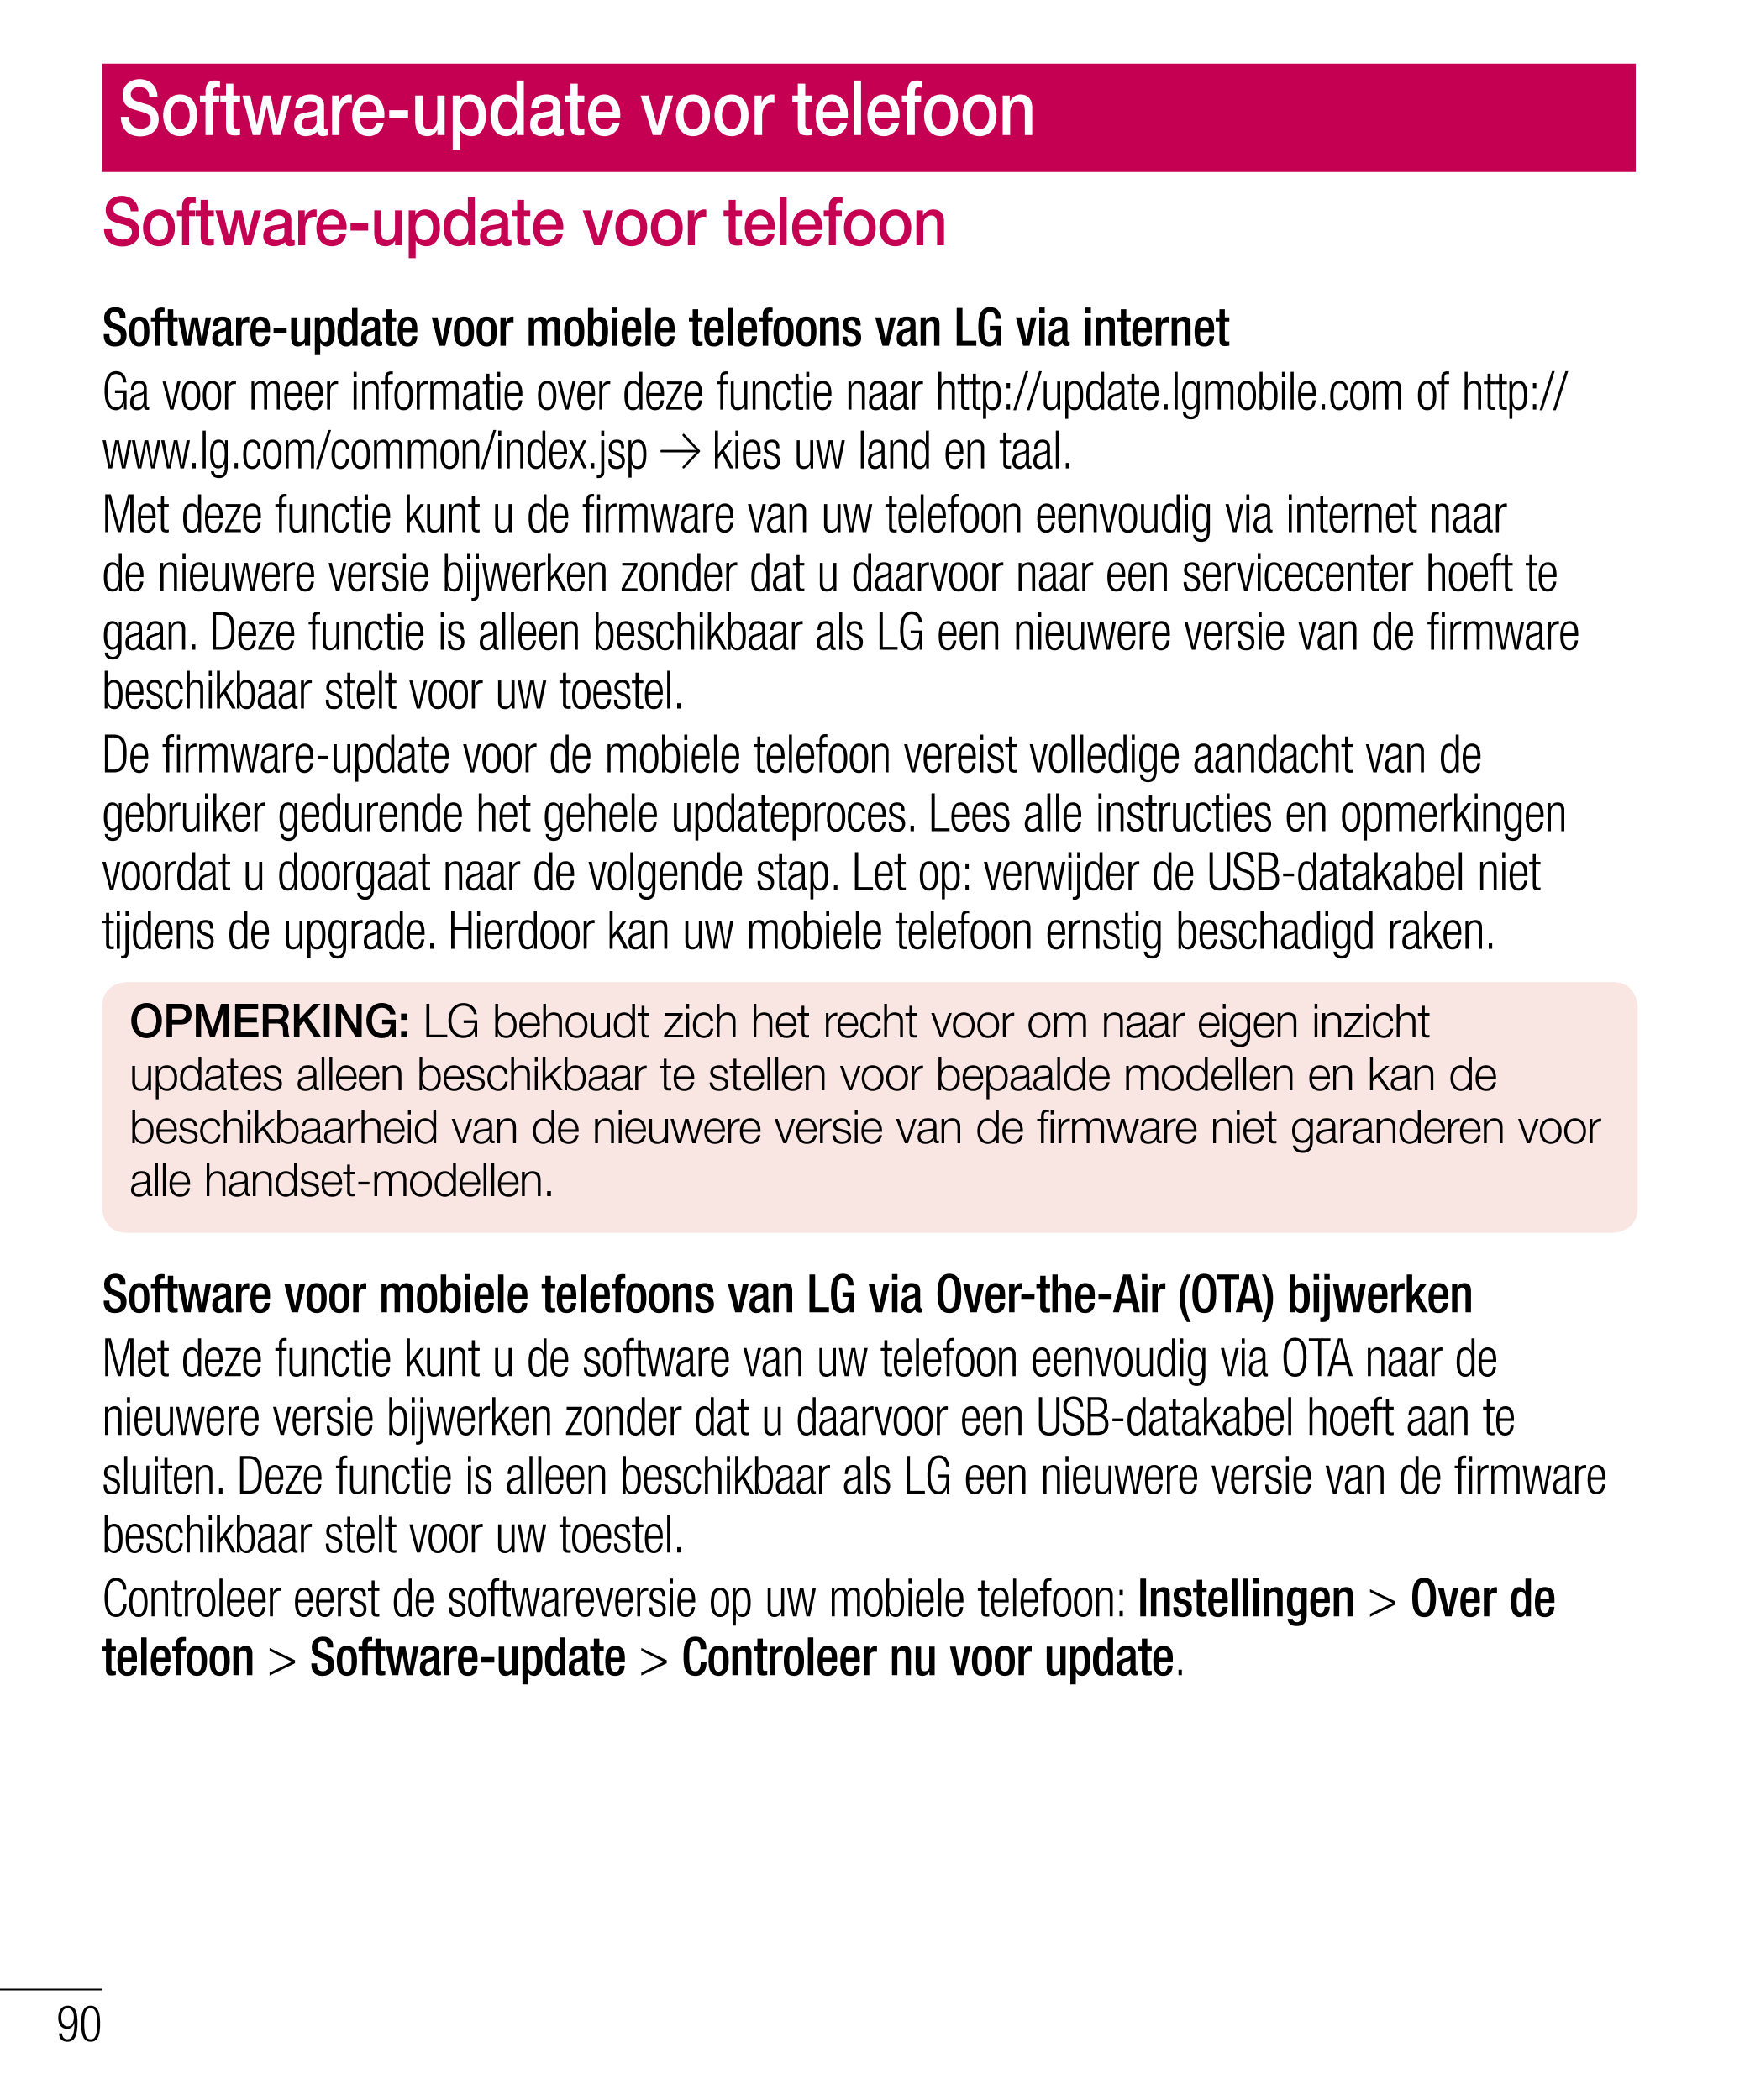 Software-update voor telefoon
Software-update voor telefoon OPMERKING: als u op de telefoon een software-update uitvoert, gaan 
